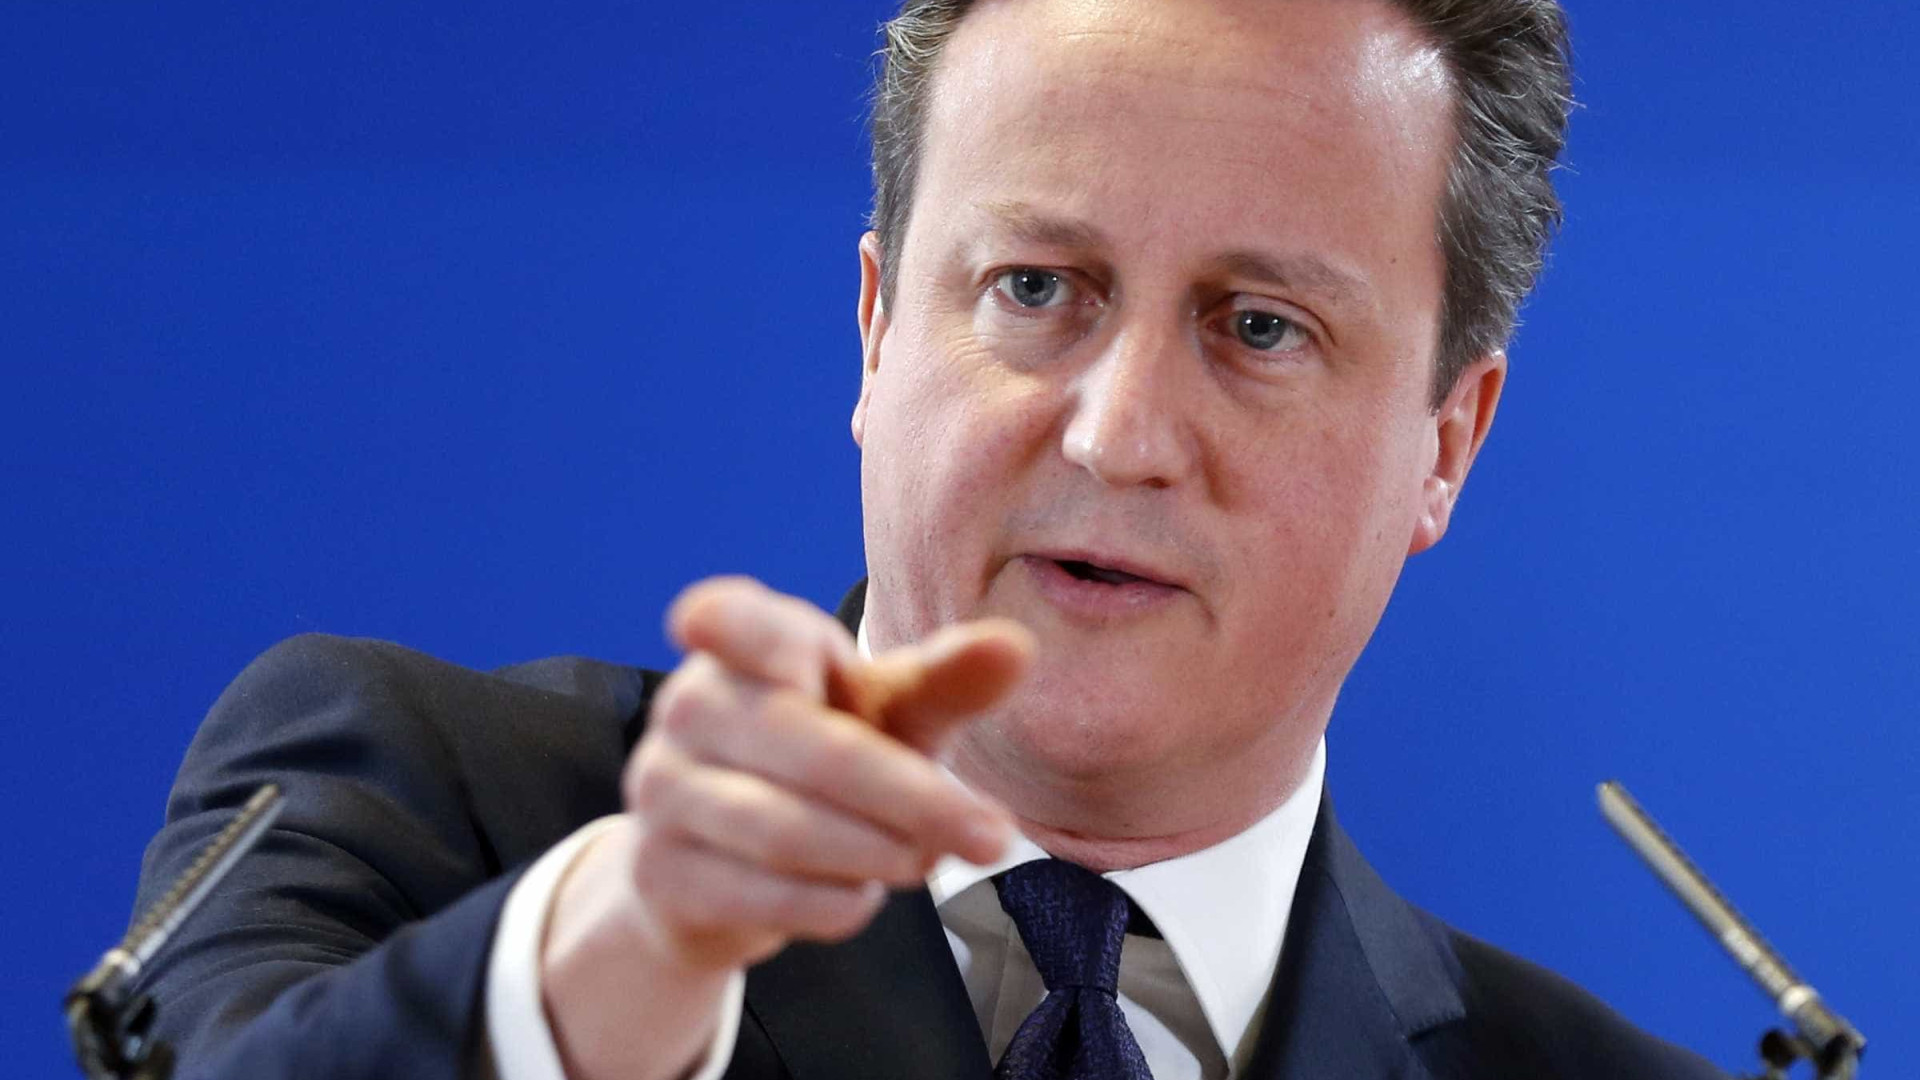 Cameron vai adotar medidas contra EI após decapitação de refém